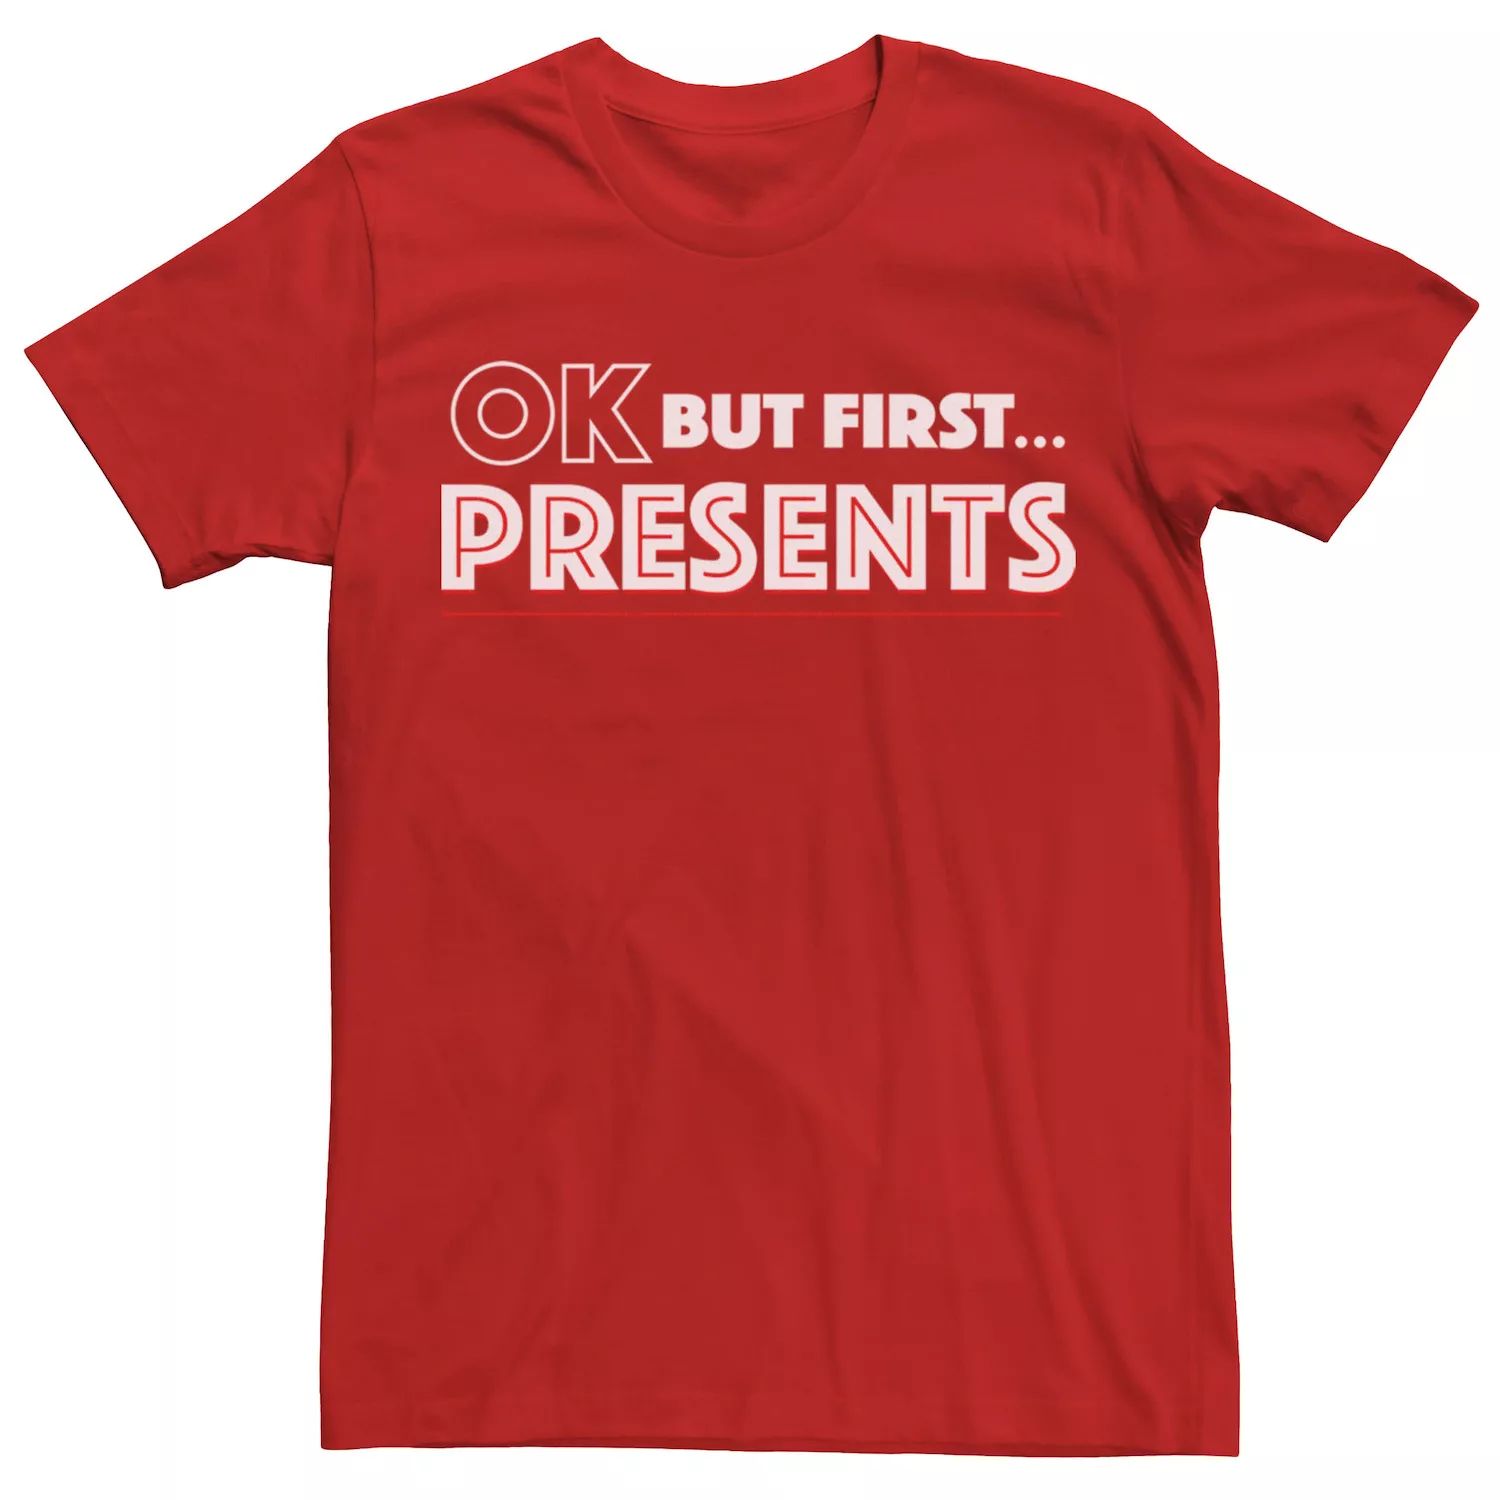 Мужская футболка с простой надписью «ОК, но сначала... подарки» Licensed Character